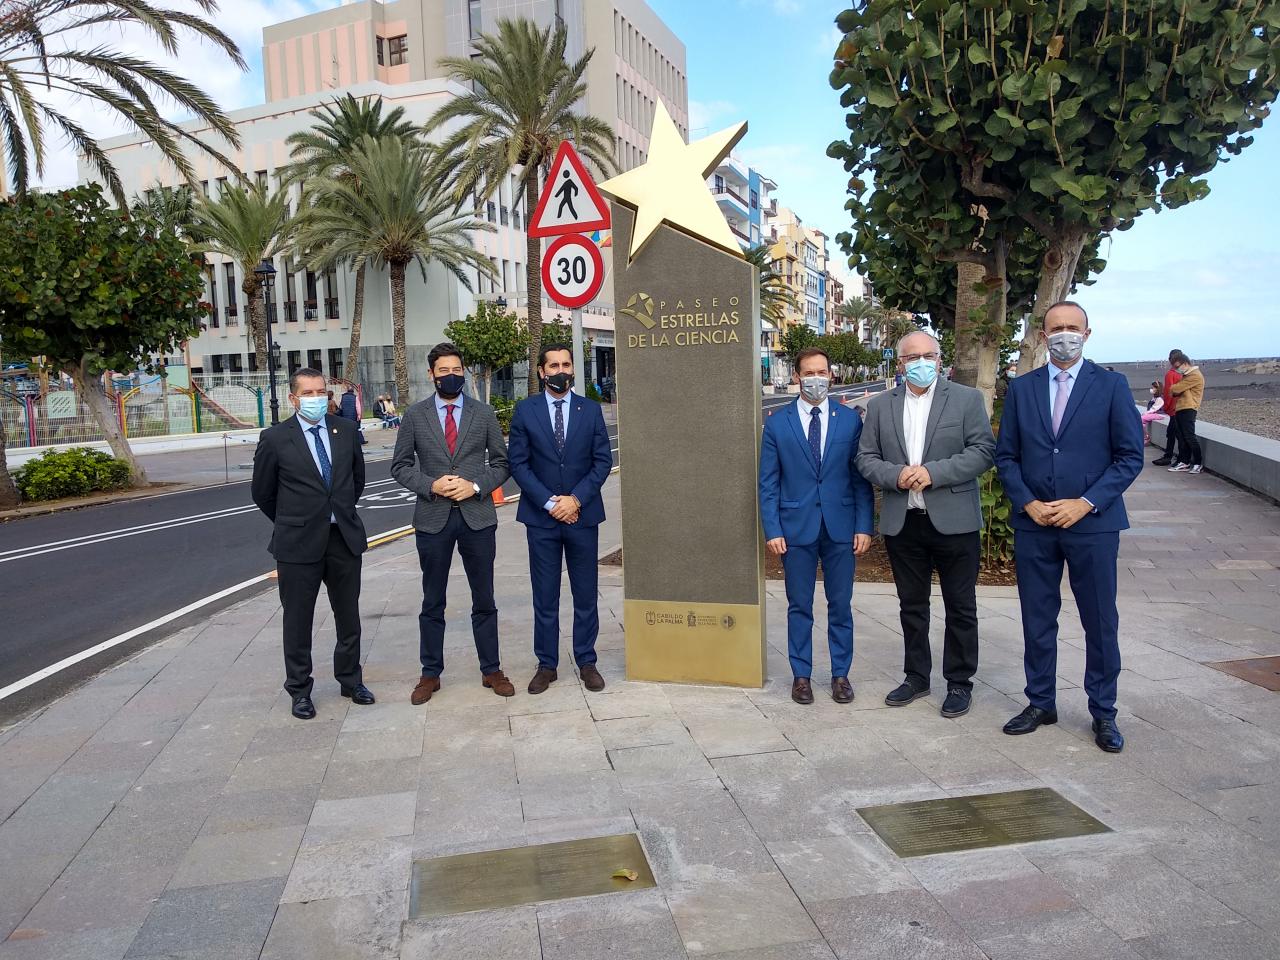 Autoridades políticas que han acudido a la inauguración del Paseo de las Estrellas de la Ciencia de La Palma. Crédito: Aarón García Botín (IAC)